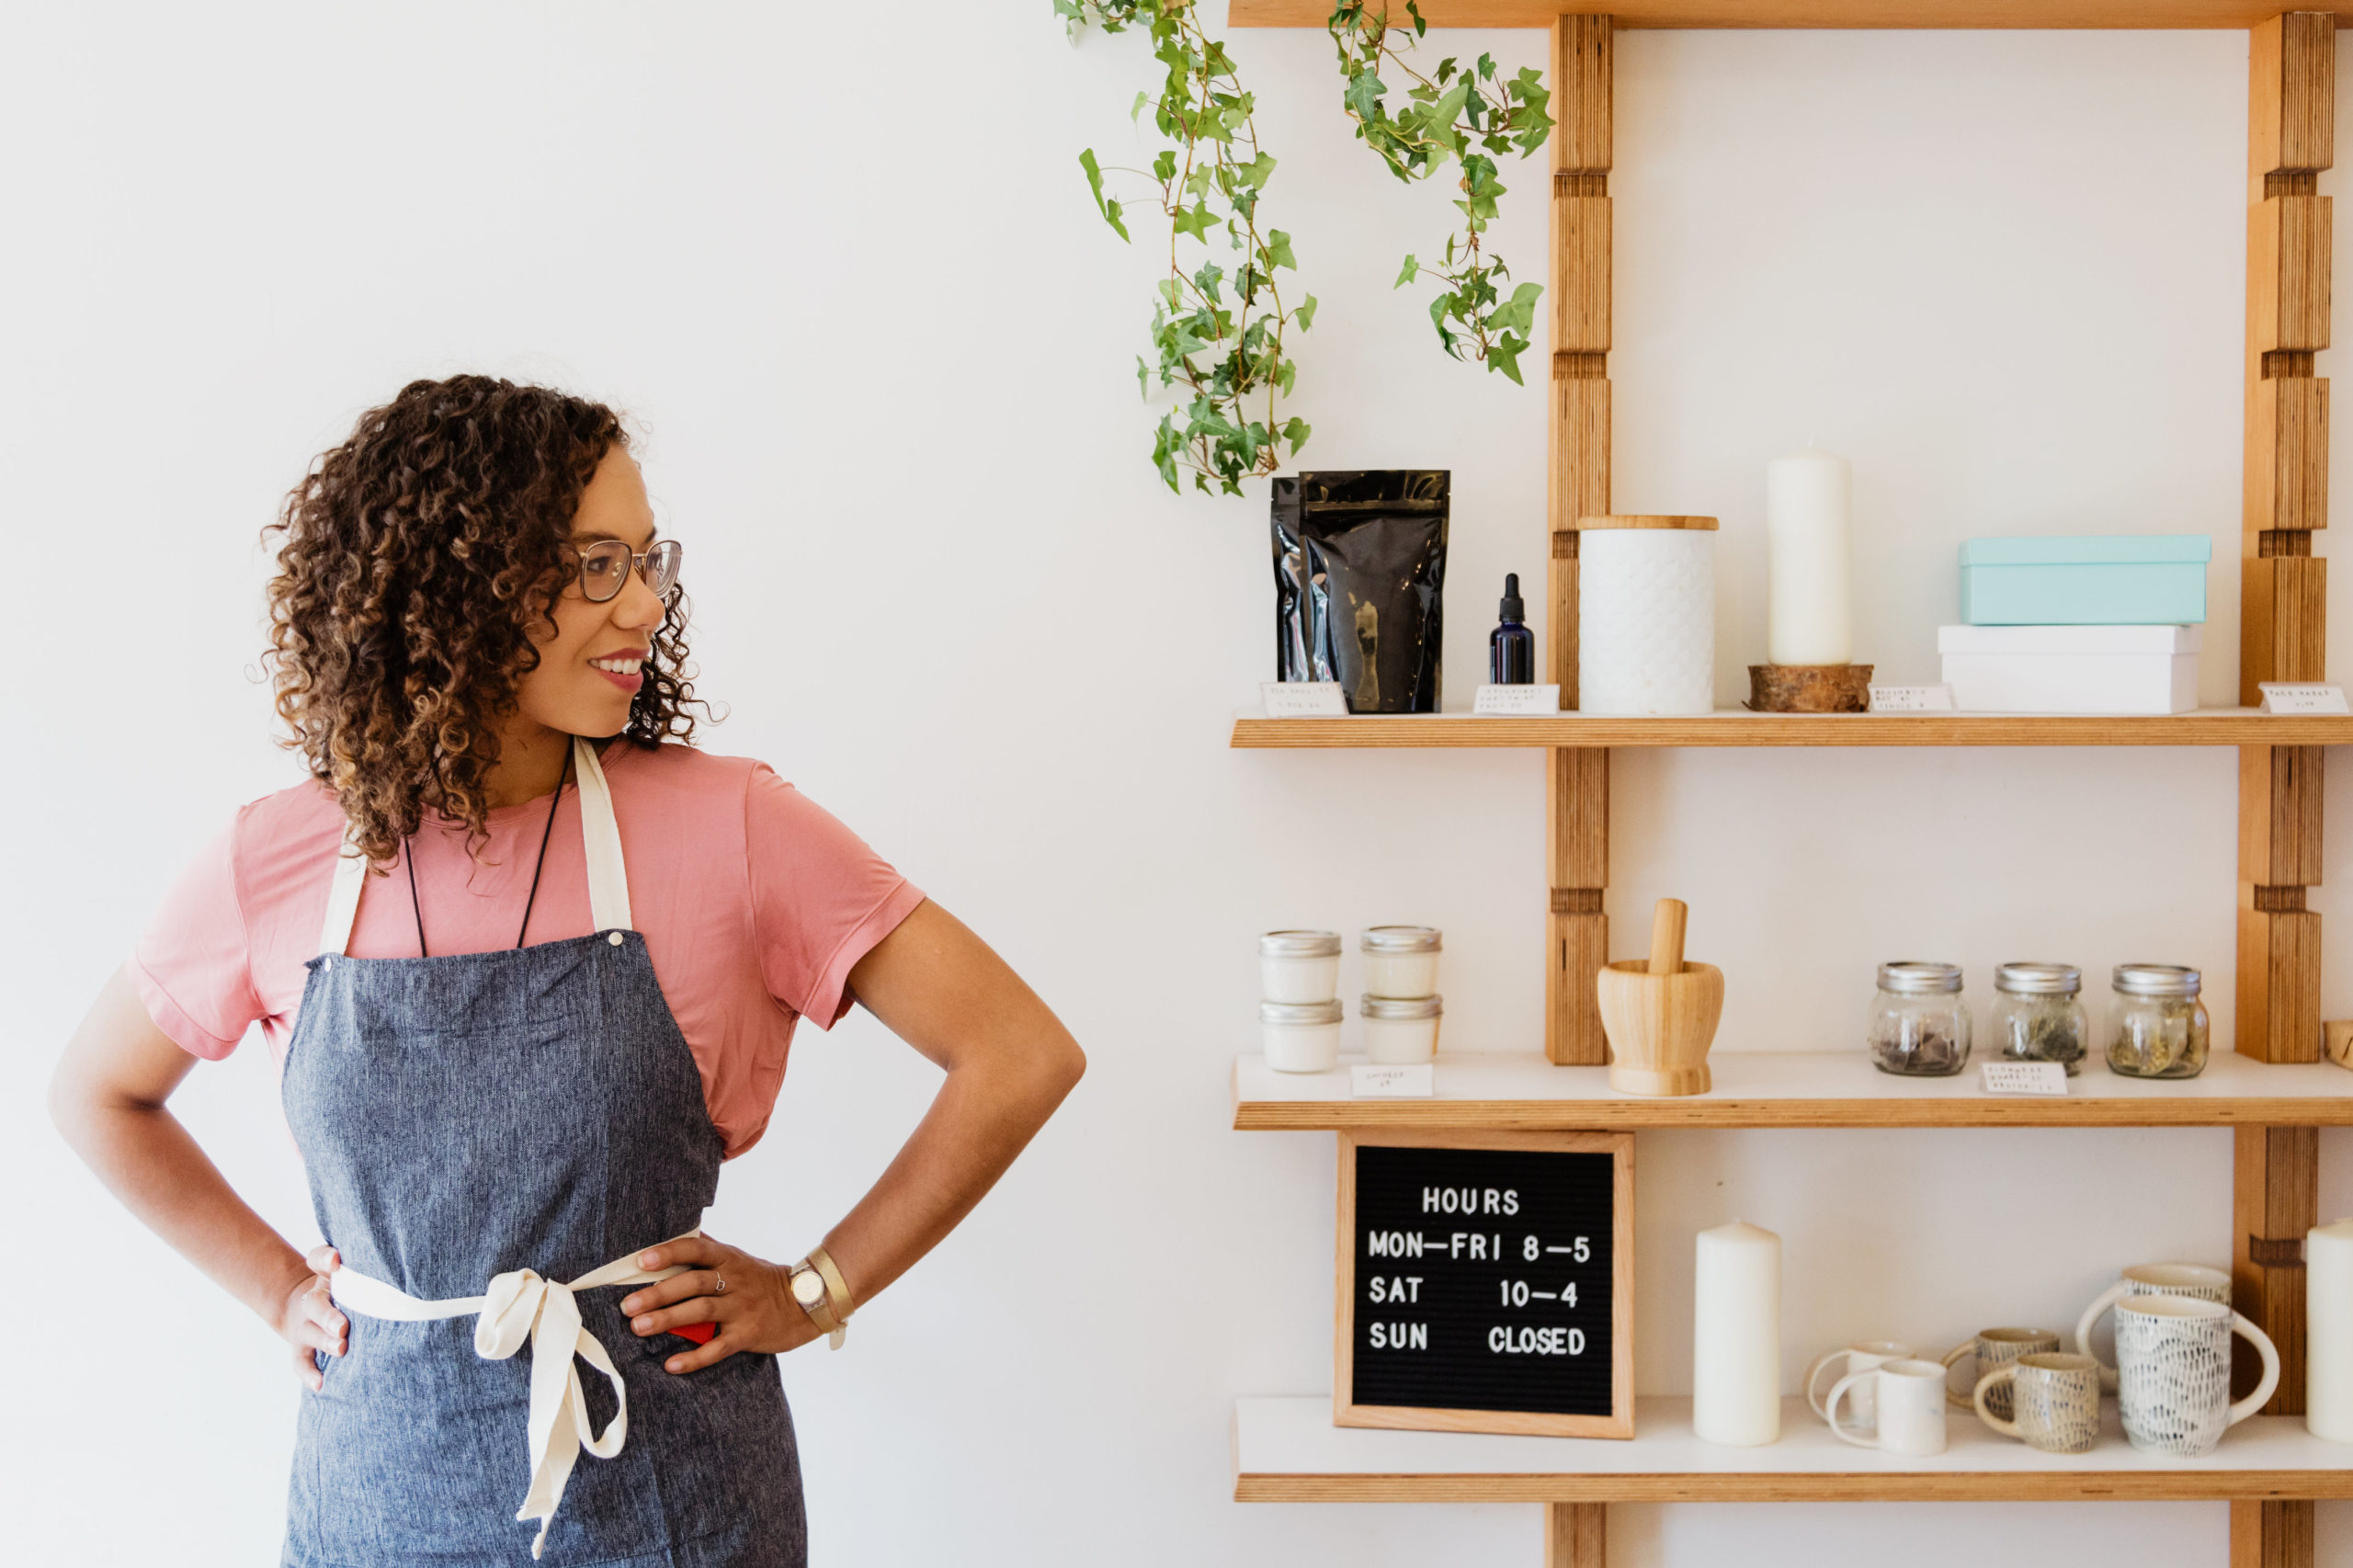 Mulher de avental sorri diante dos produtos exposição na estante de sua loja. Imagem ilustrativa para texto sobre a ferramentas Canvas de Empreendedorismo Feminino da Semente Negócios.

Foto da Sarah Pflug do Burst.